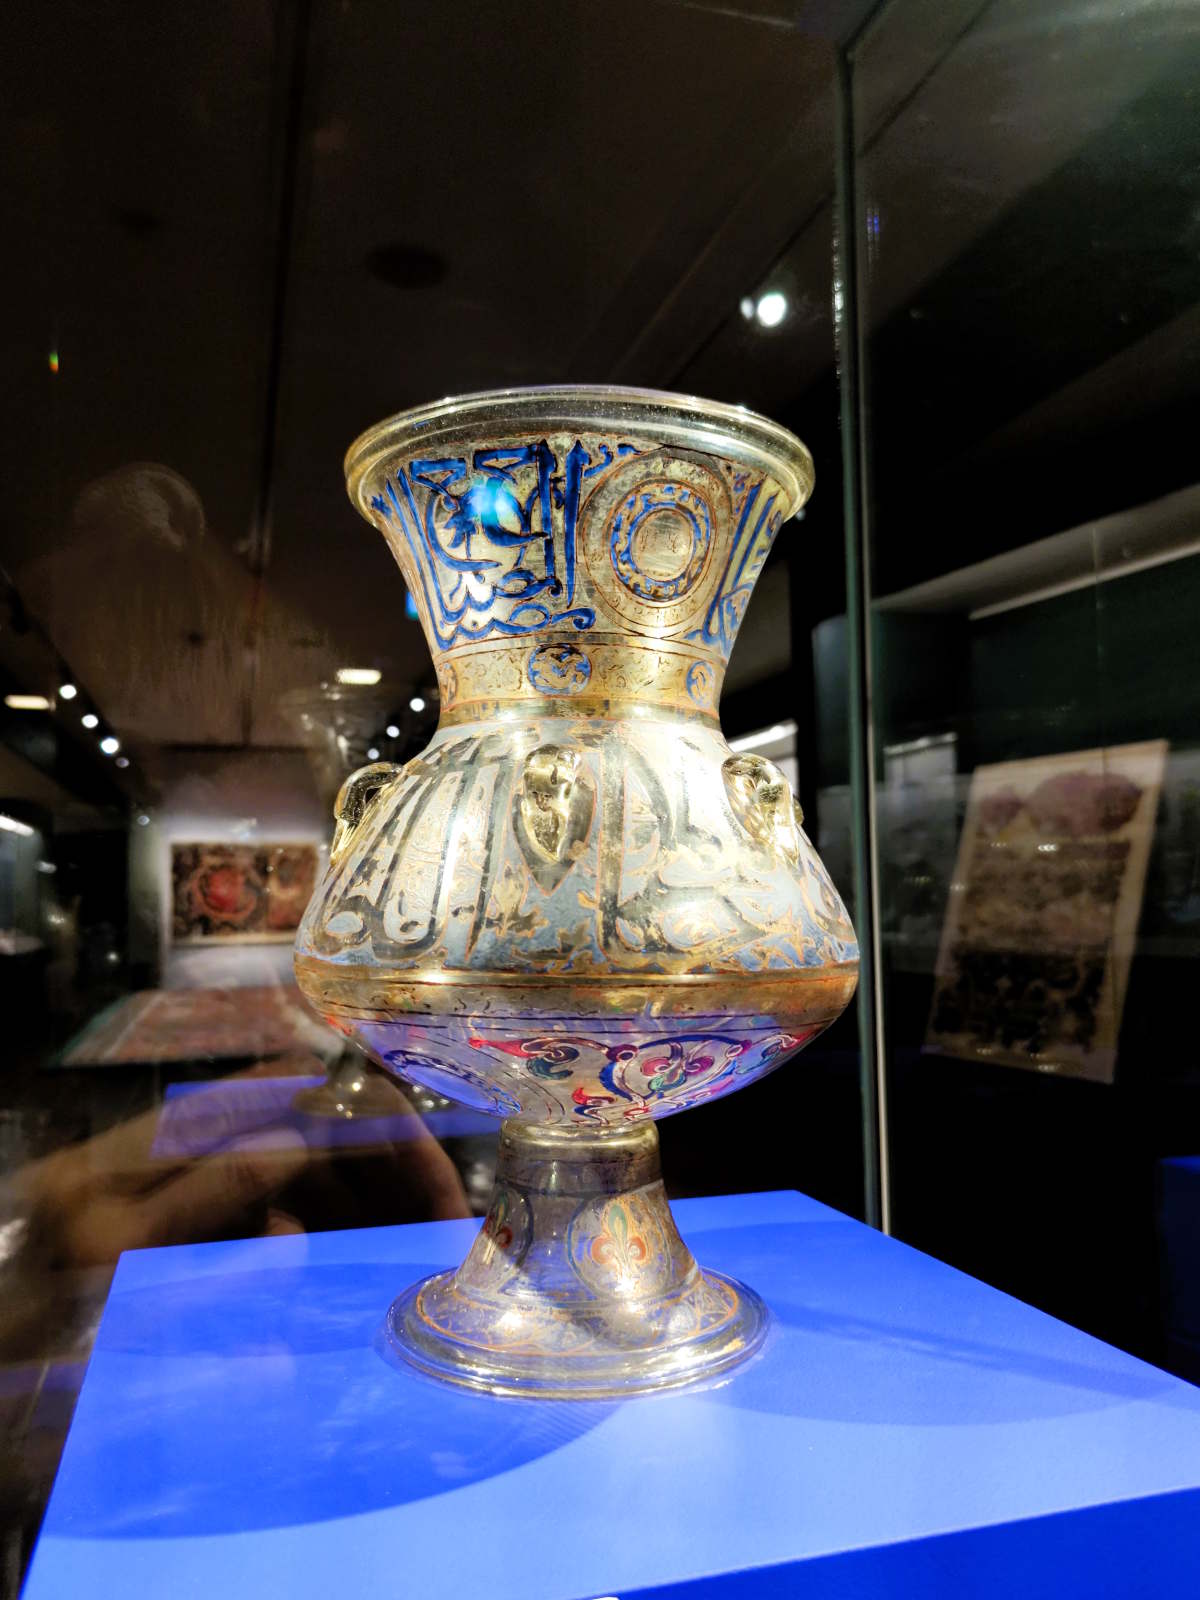 Visitare il Museo D'Arte Orientale a Torino: Lampada di una Moschea nella Galleria di Arte Islamica